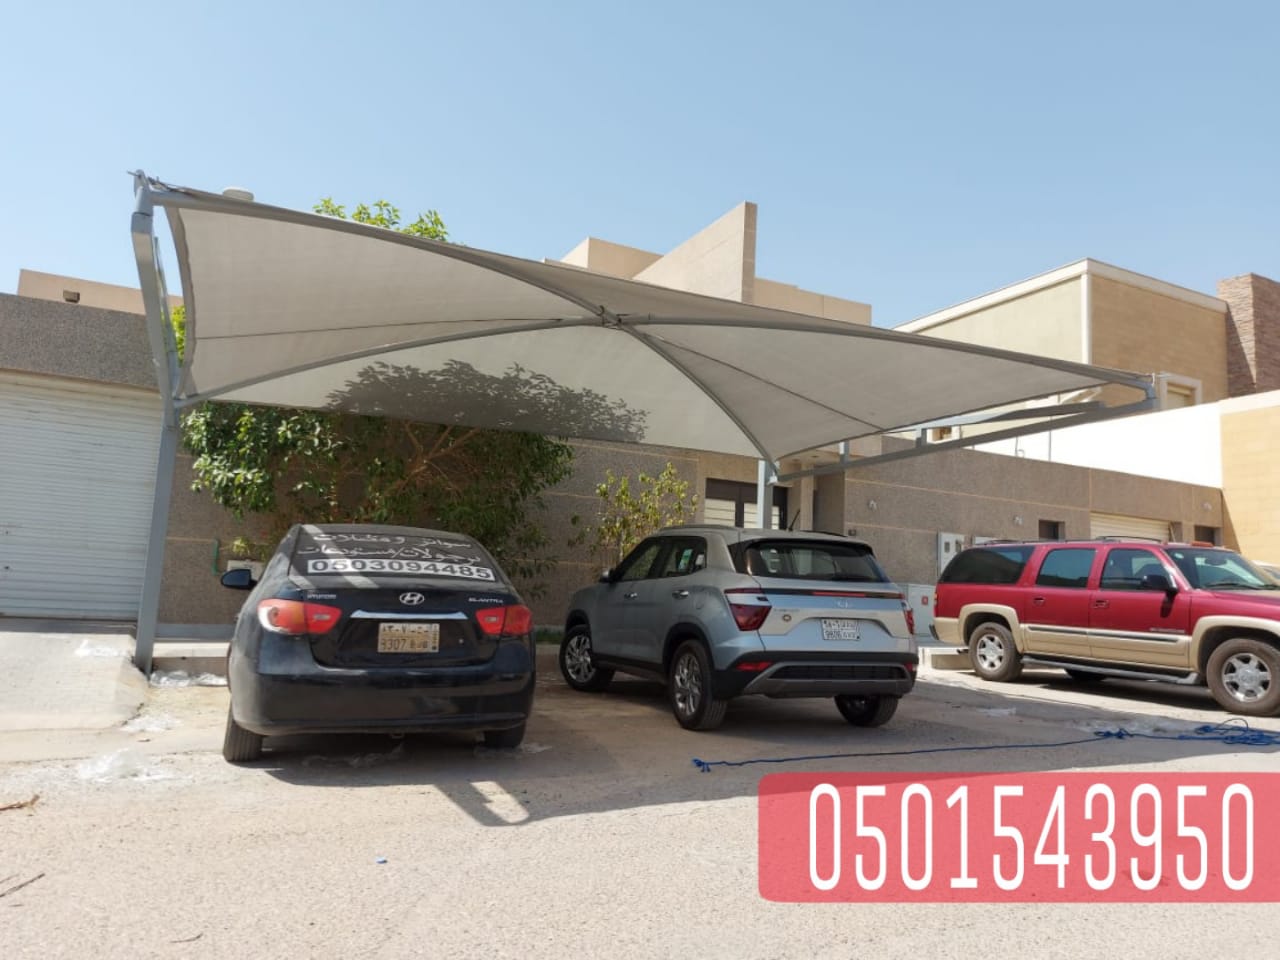 مظلات سيارات مبتكرة و عصرية في جدة , 0501543950   P_213062p9p9